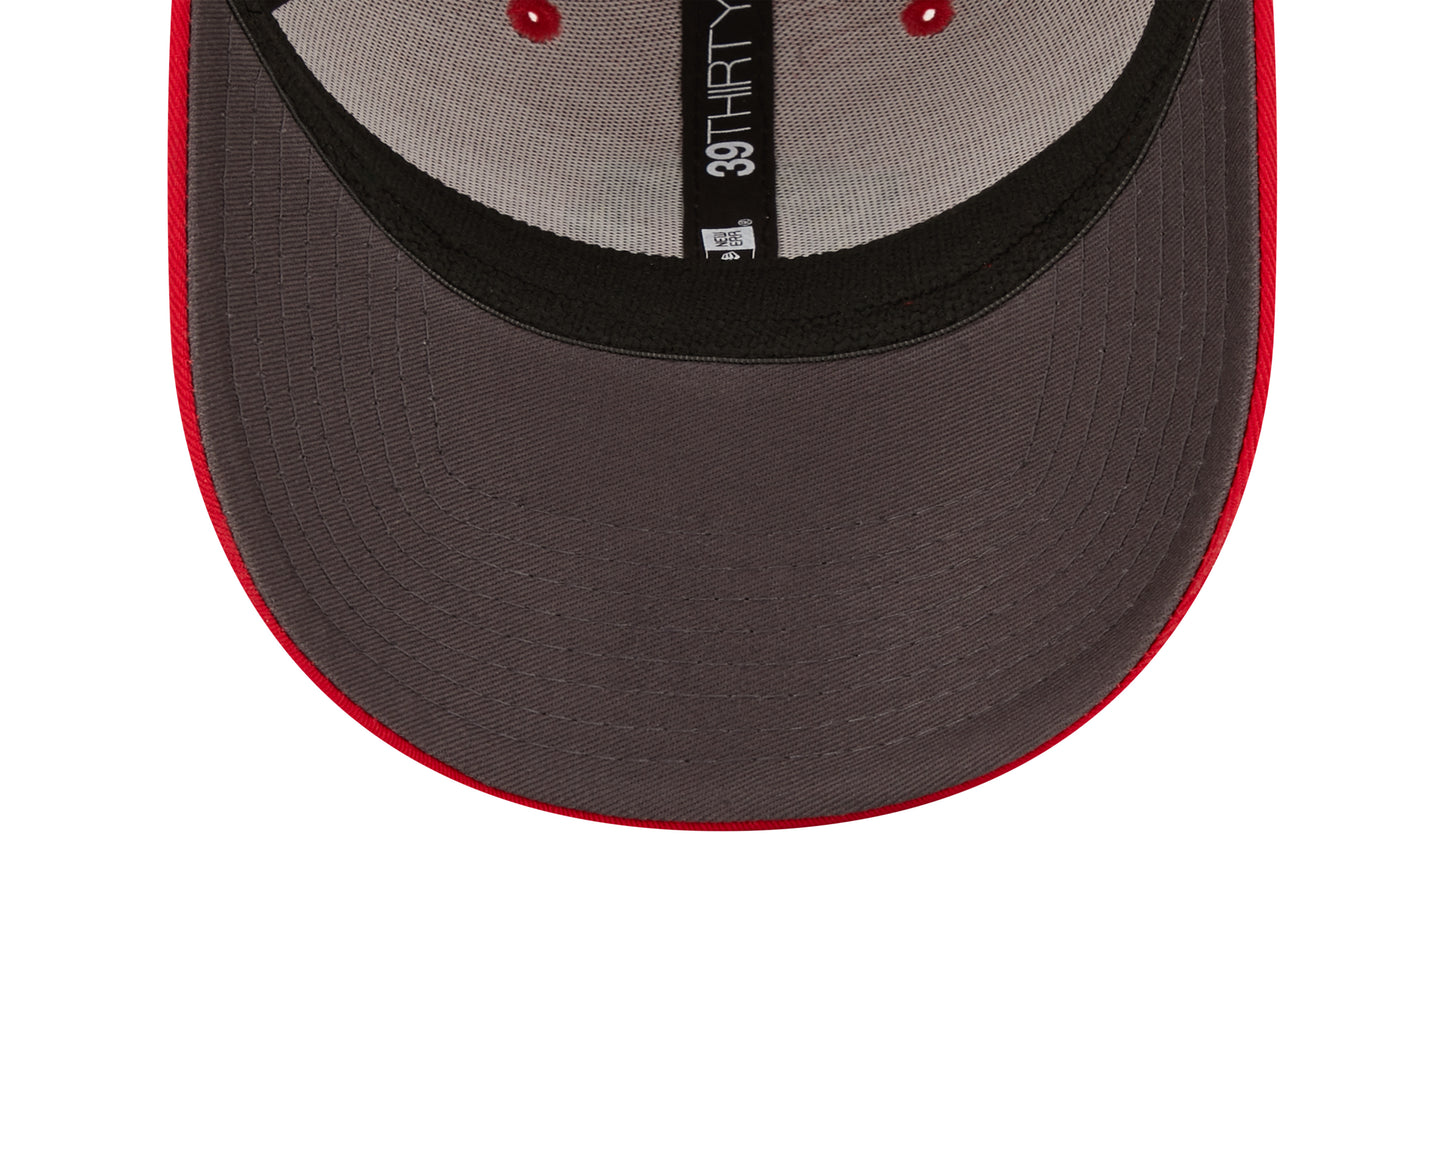 Maryland Terrapins New Era Red/Graphite Team Neo 39THIRTY Flex Hat